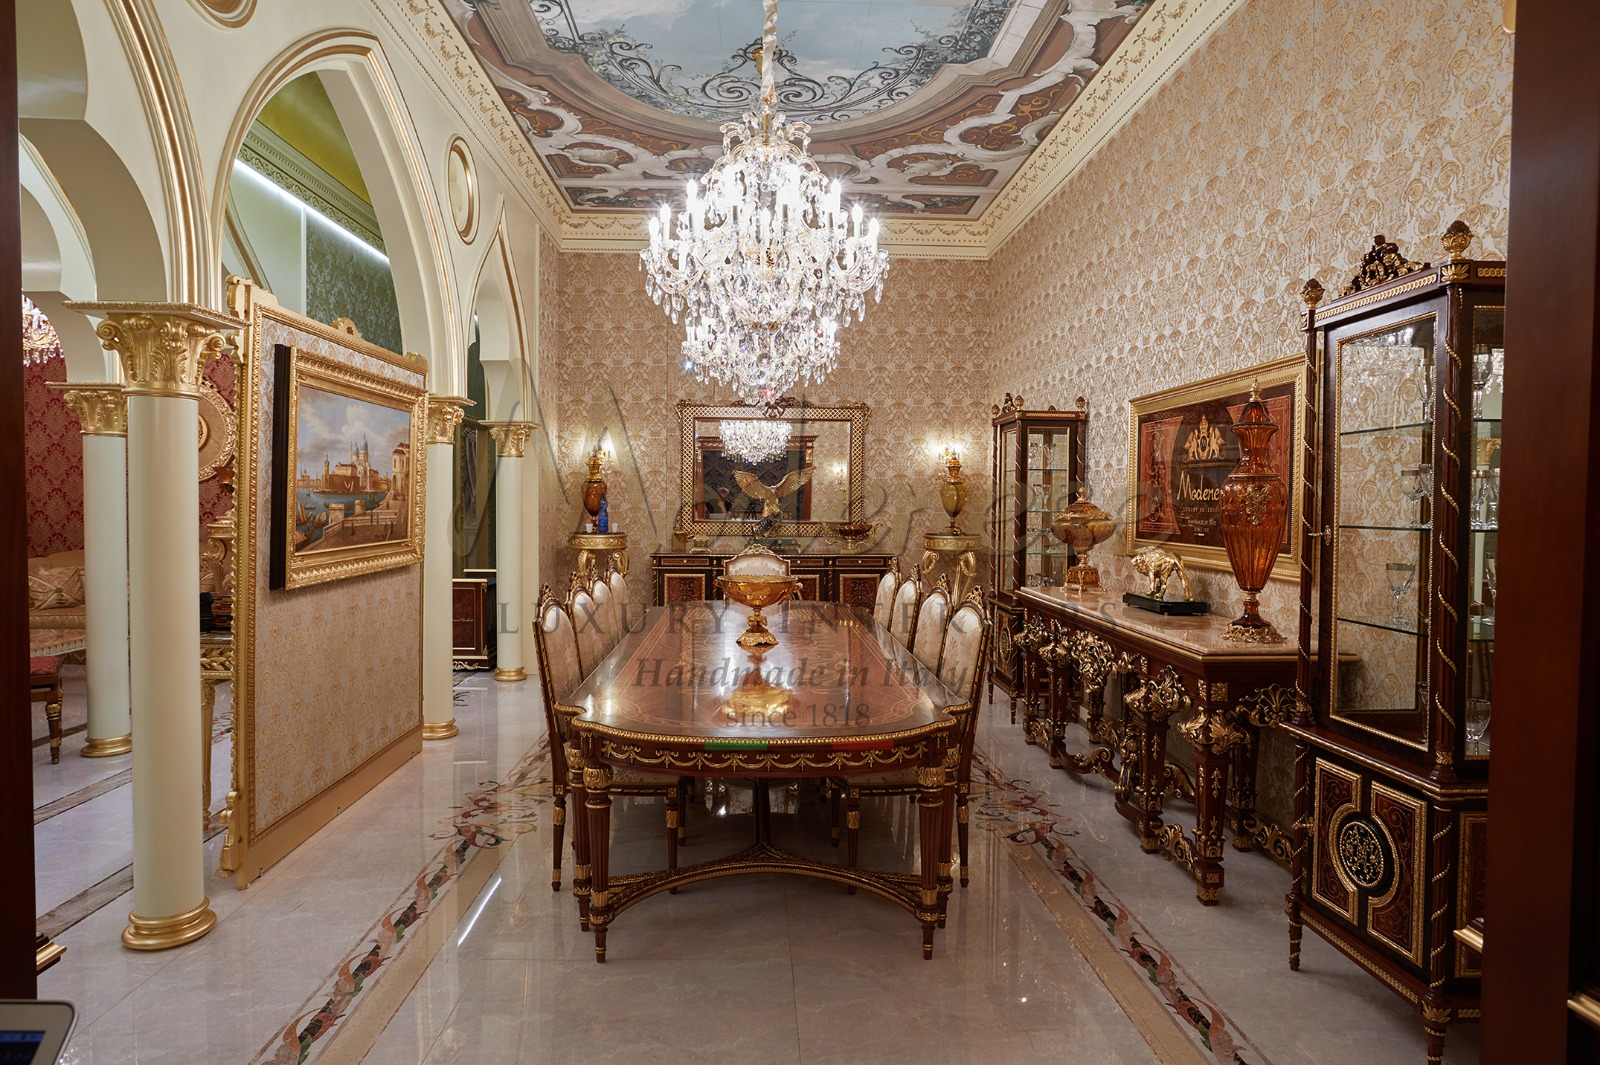 выставка мебели неделя дизайна 2019 Италия Милан Salone del Mobile 2020 роскошная королевская коллекция роскошная итальянская мебель ручной работы ремесленники классические золотые детали в французском стиле